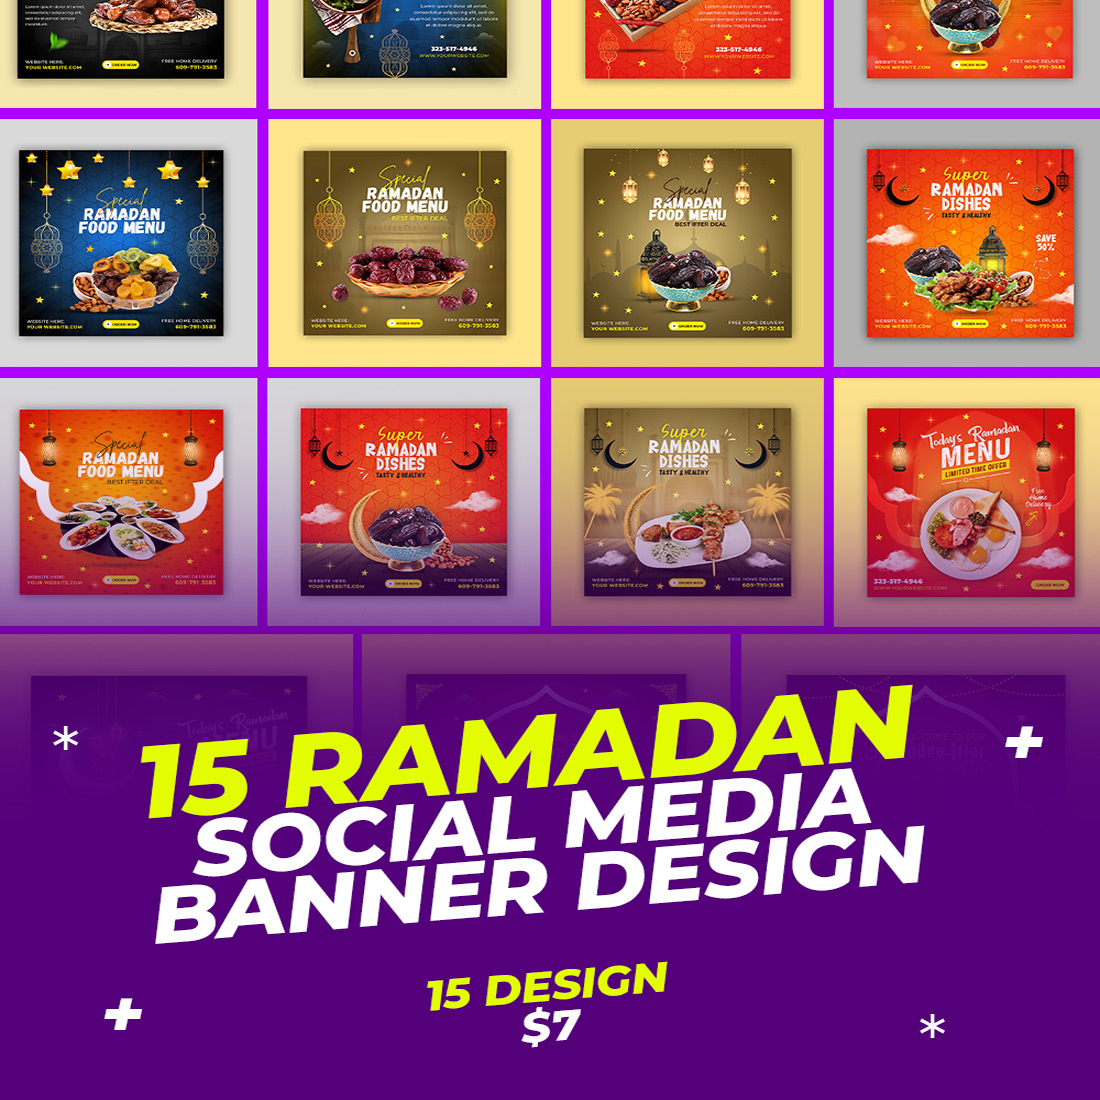 Ramadan Kareem Sale Festival Religious Social Media Banner Design main cover